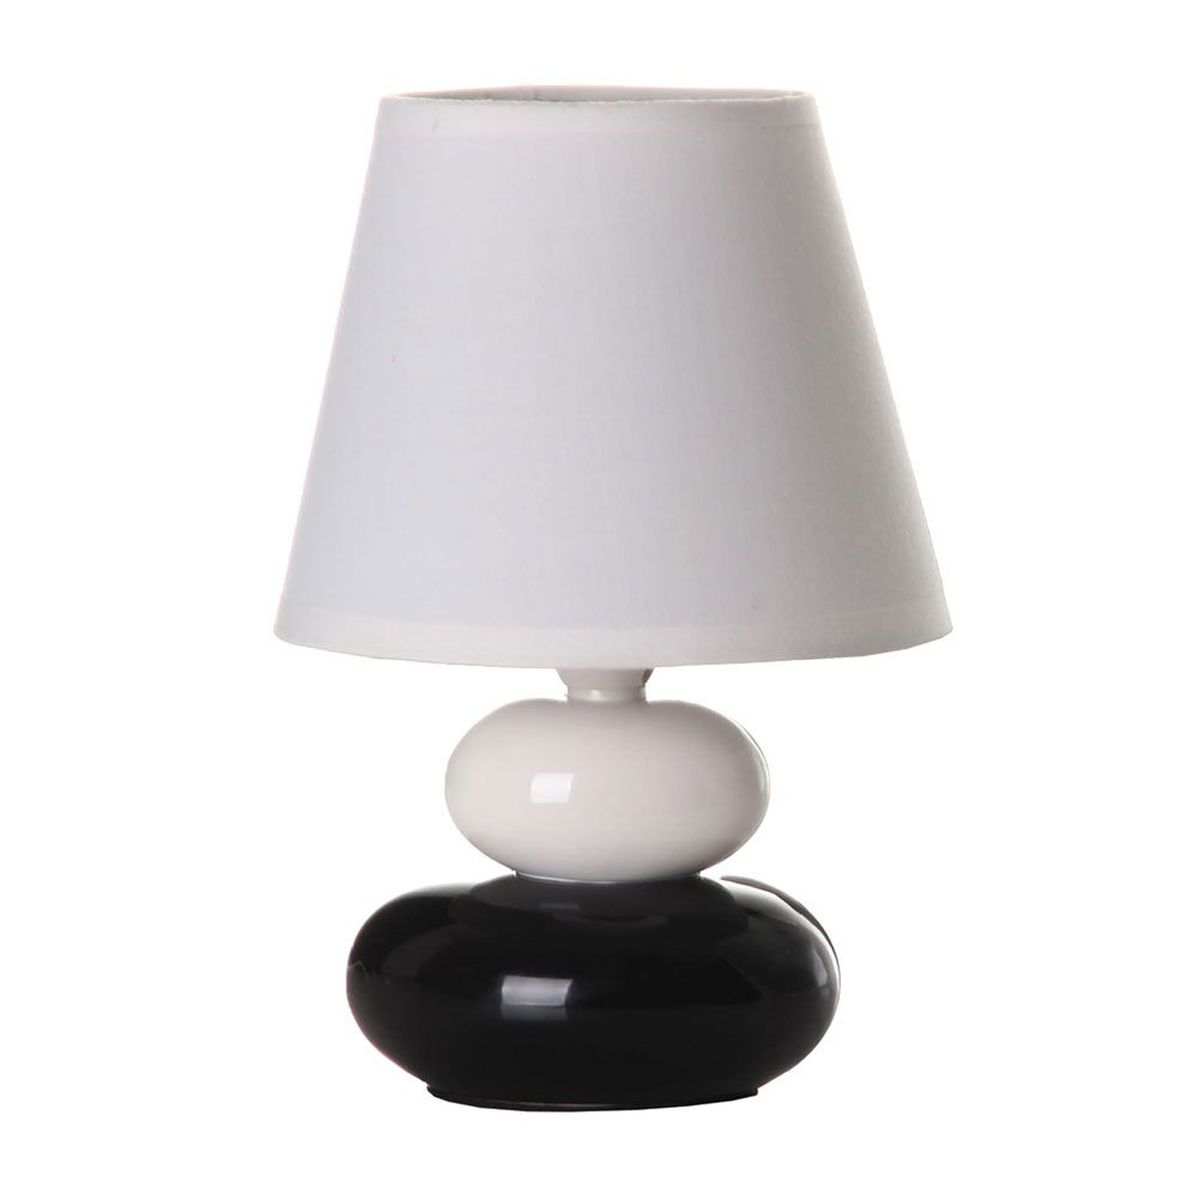 Lampe galets - Noir et blanc - 22 cm